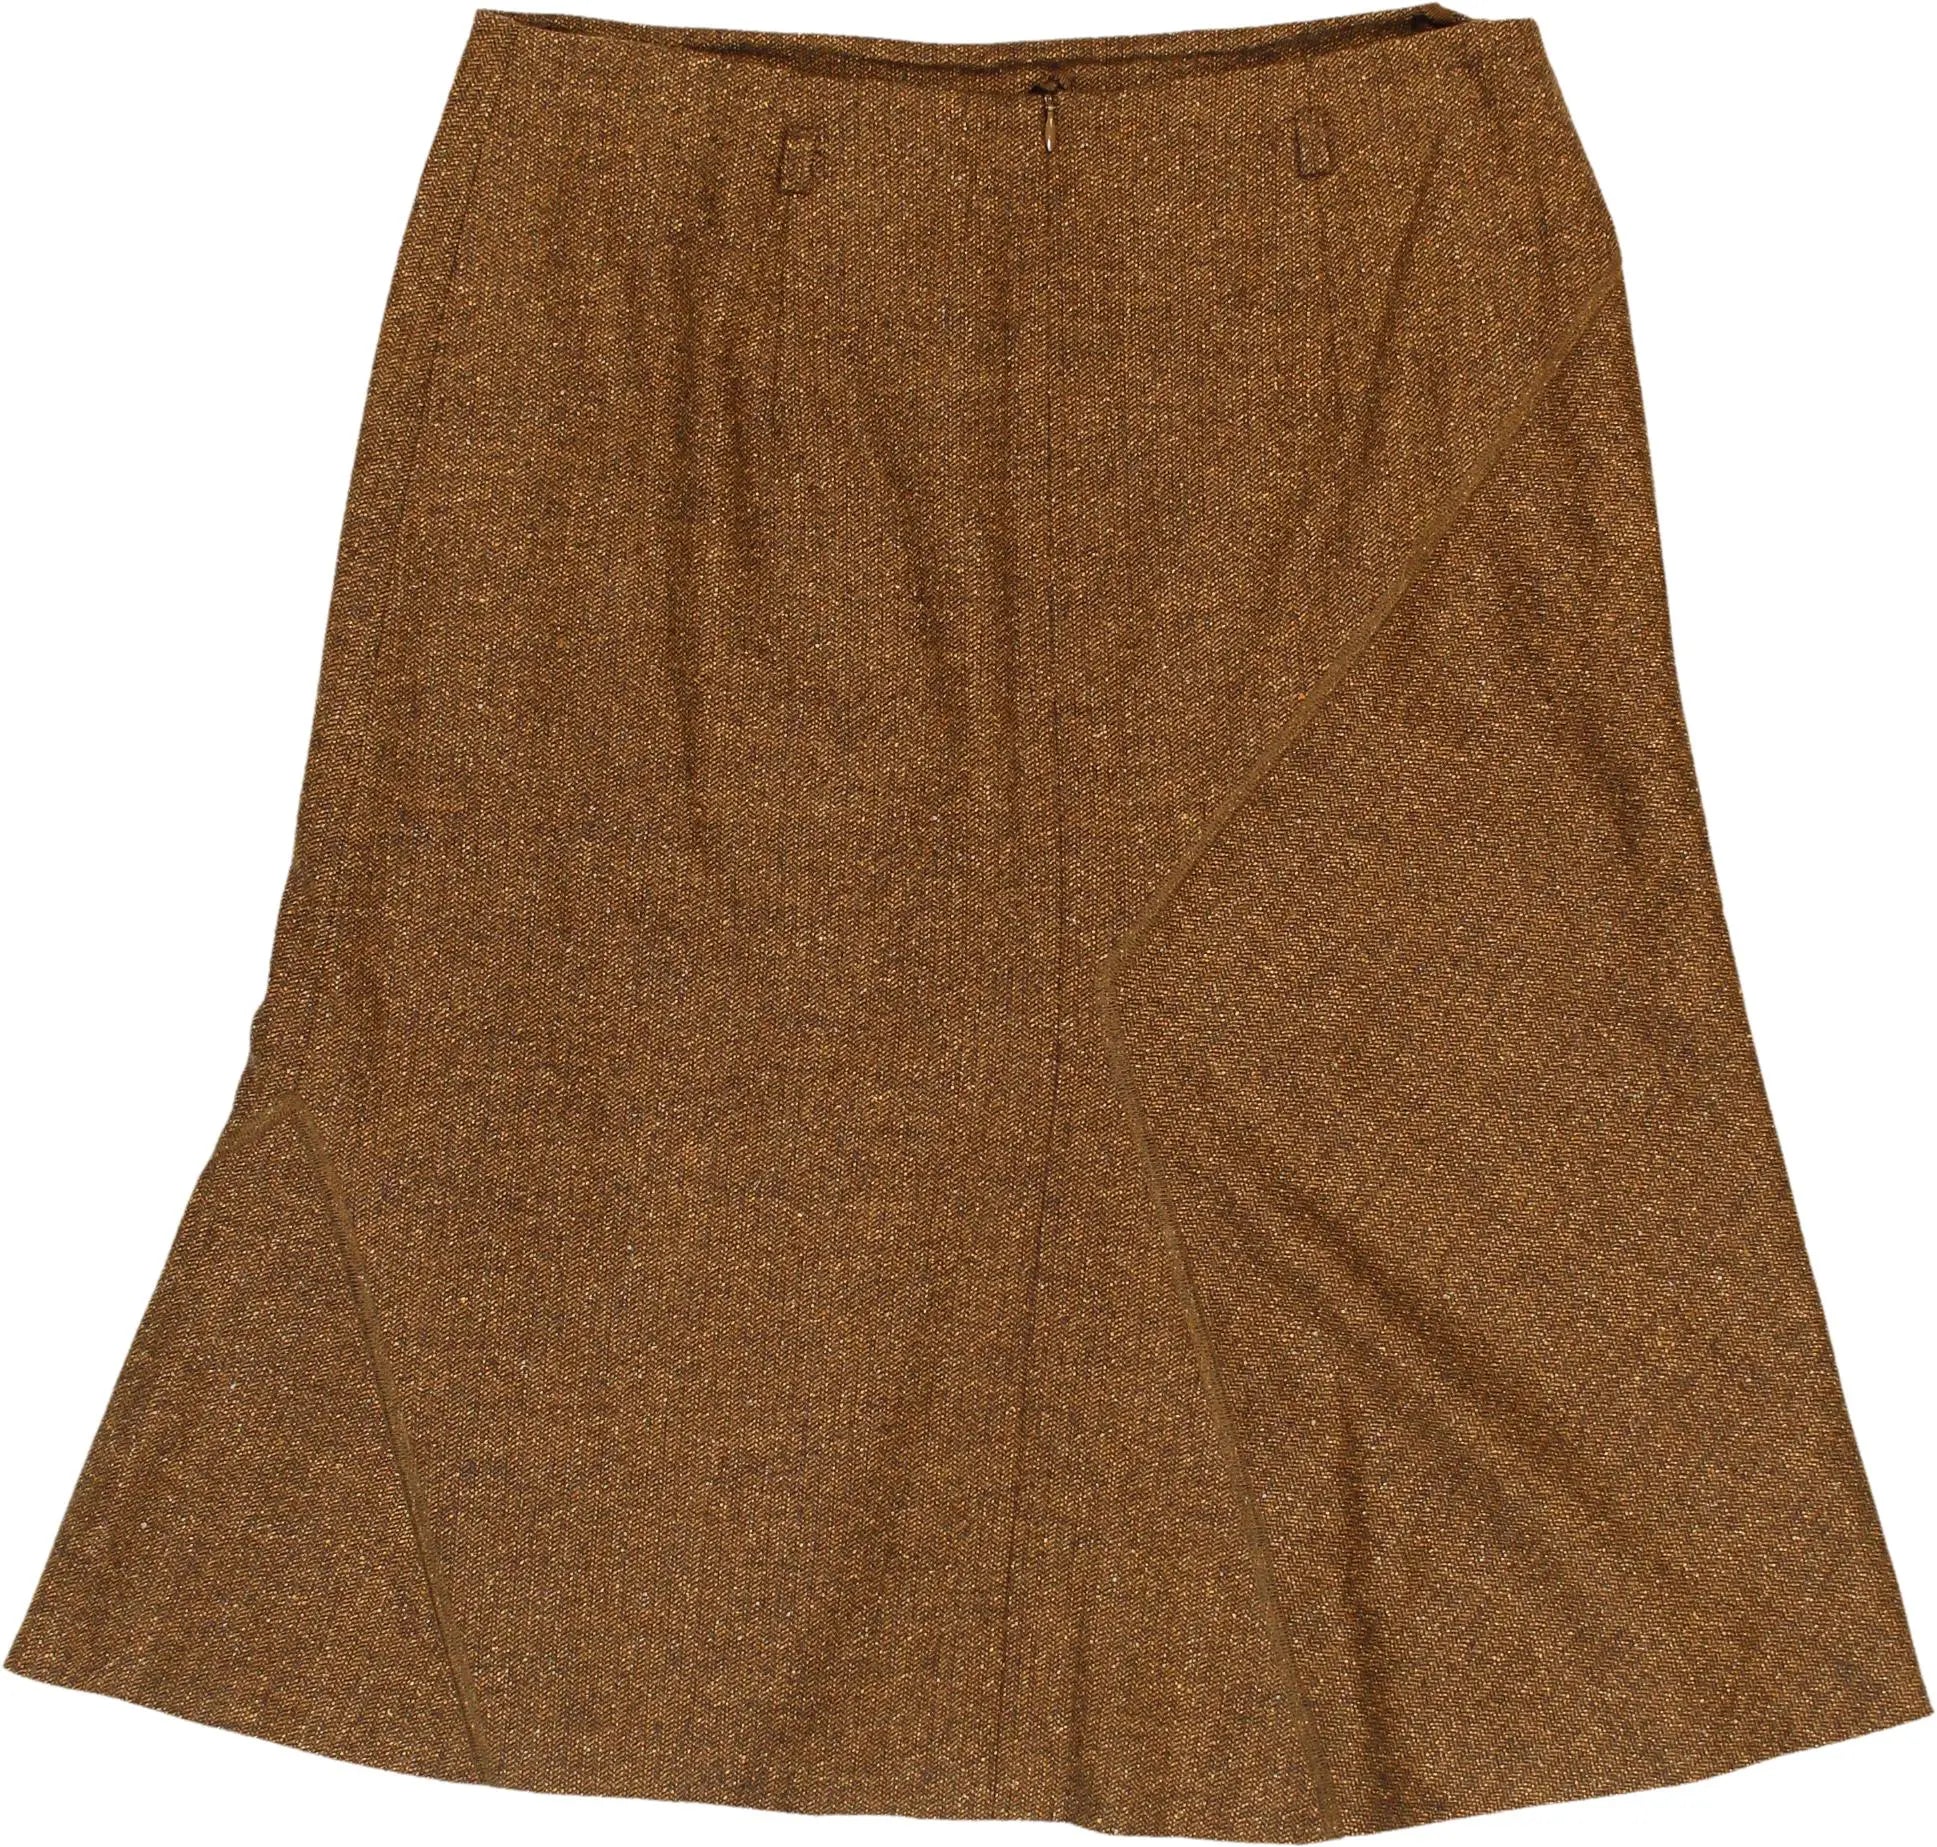 BASLER - Skirt- ThriftTale.com - Vintage and second handclothing